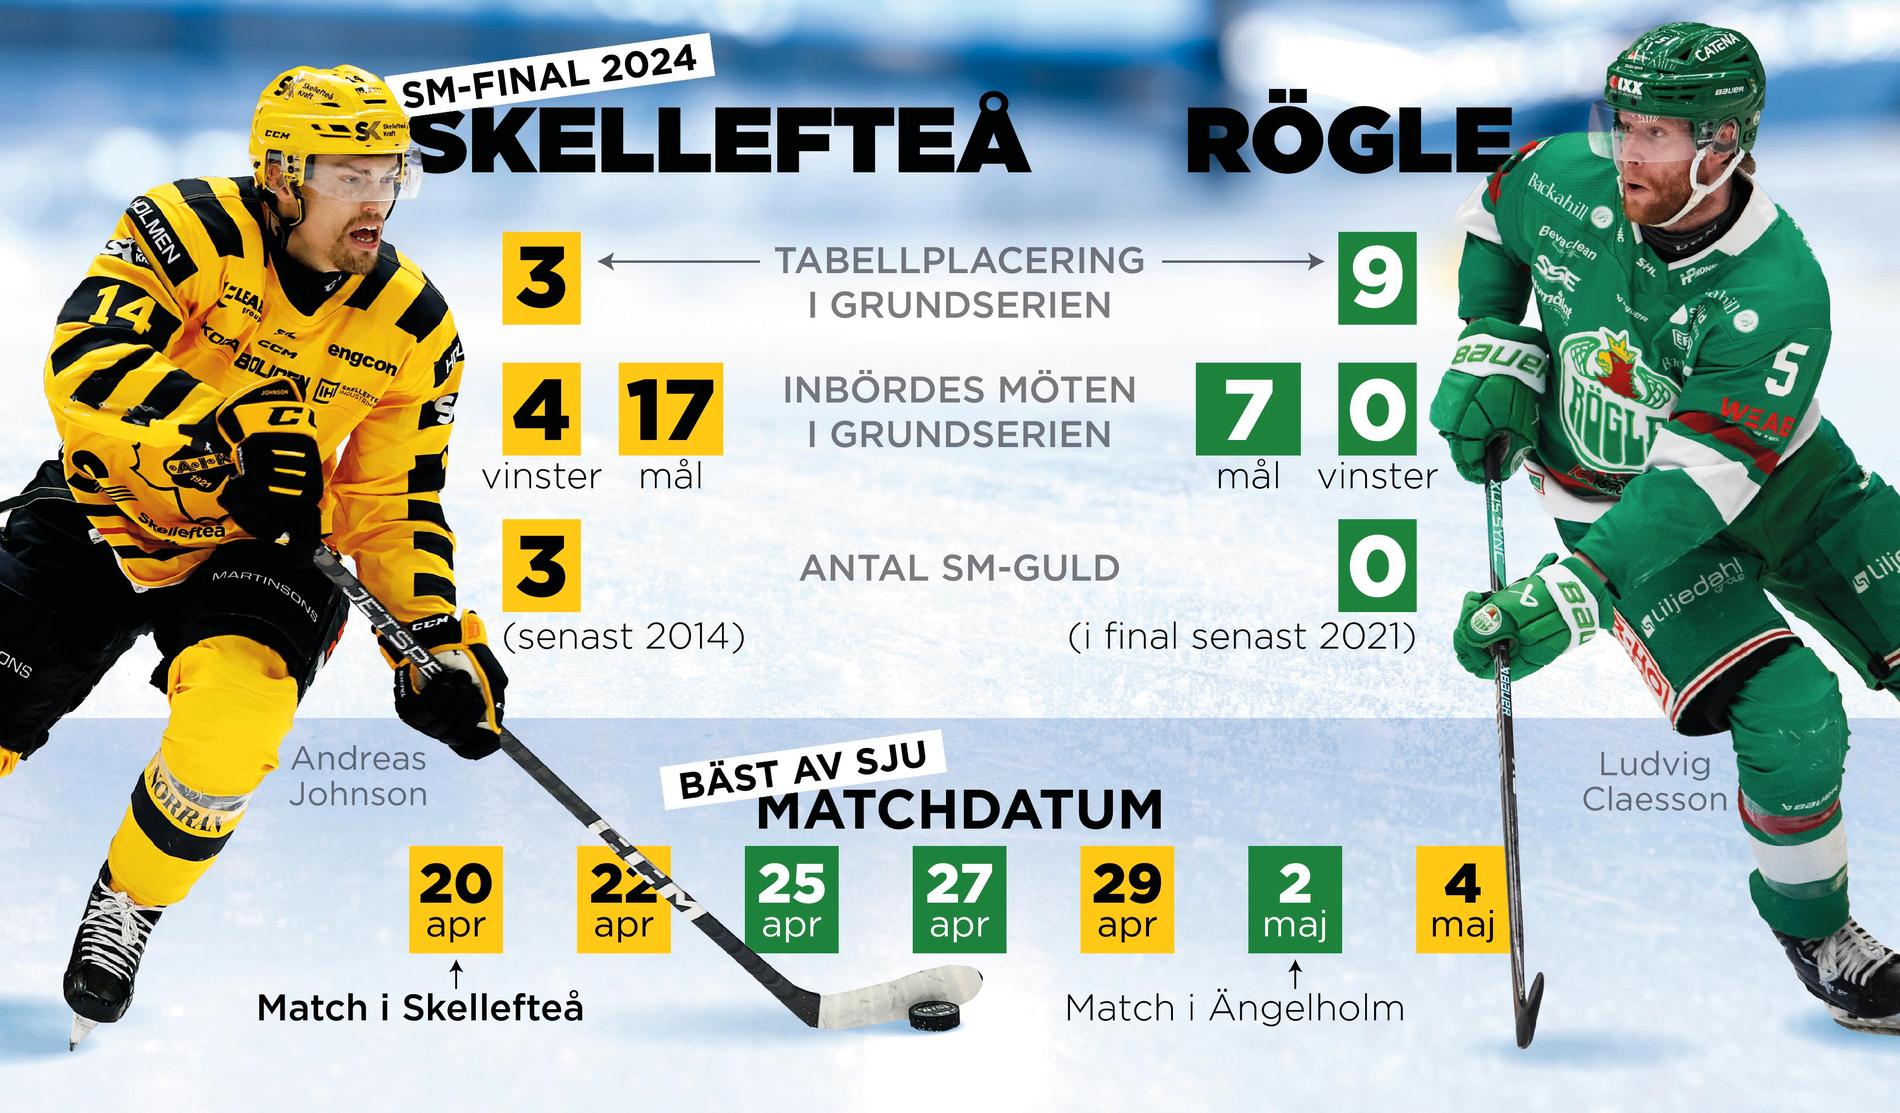 Finallagen Skellefteå och Rögle möttes fyra gånger i grundserien. Skellefteå vann samtliga möten.